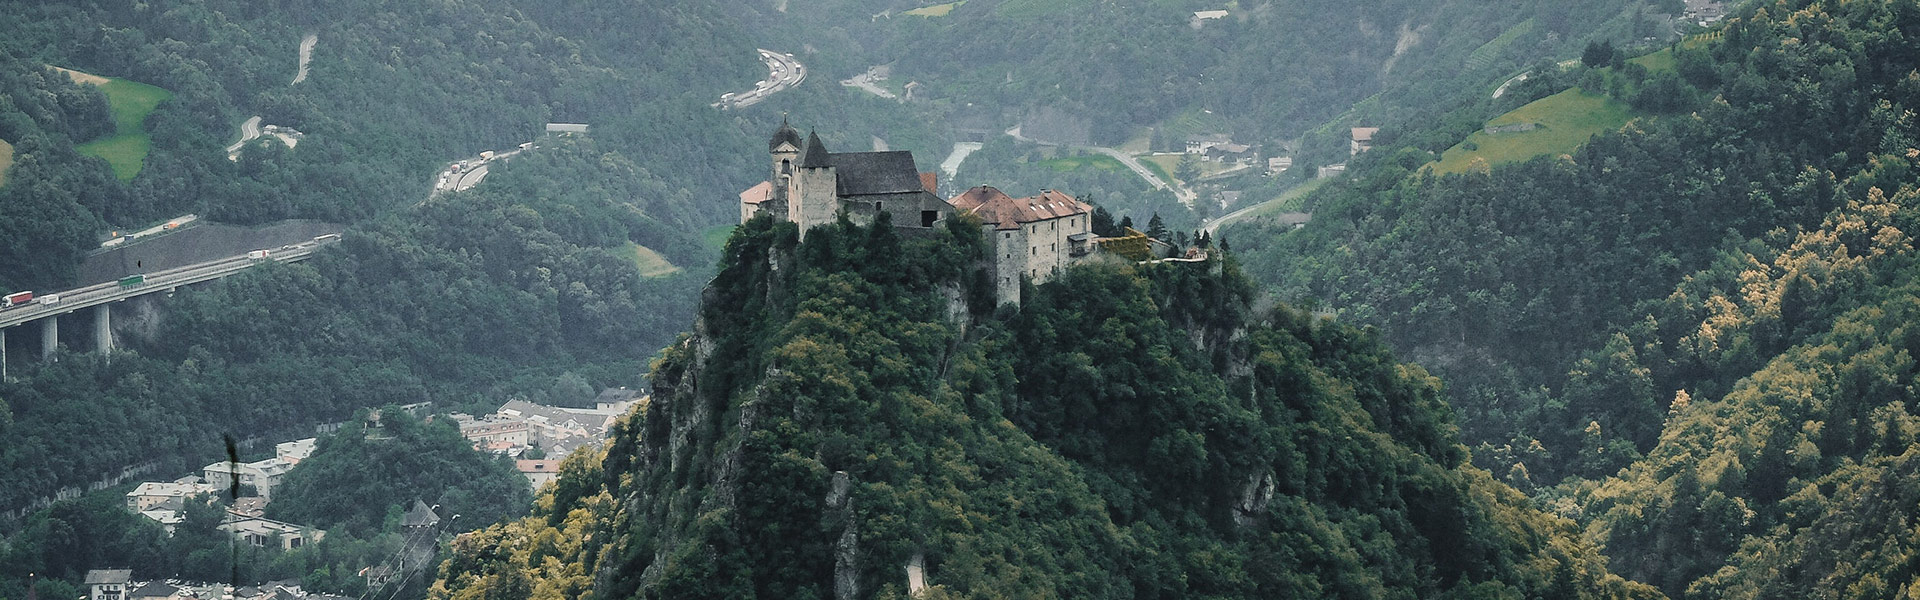 Liechtenstein - um dos países menos visitados do mundo